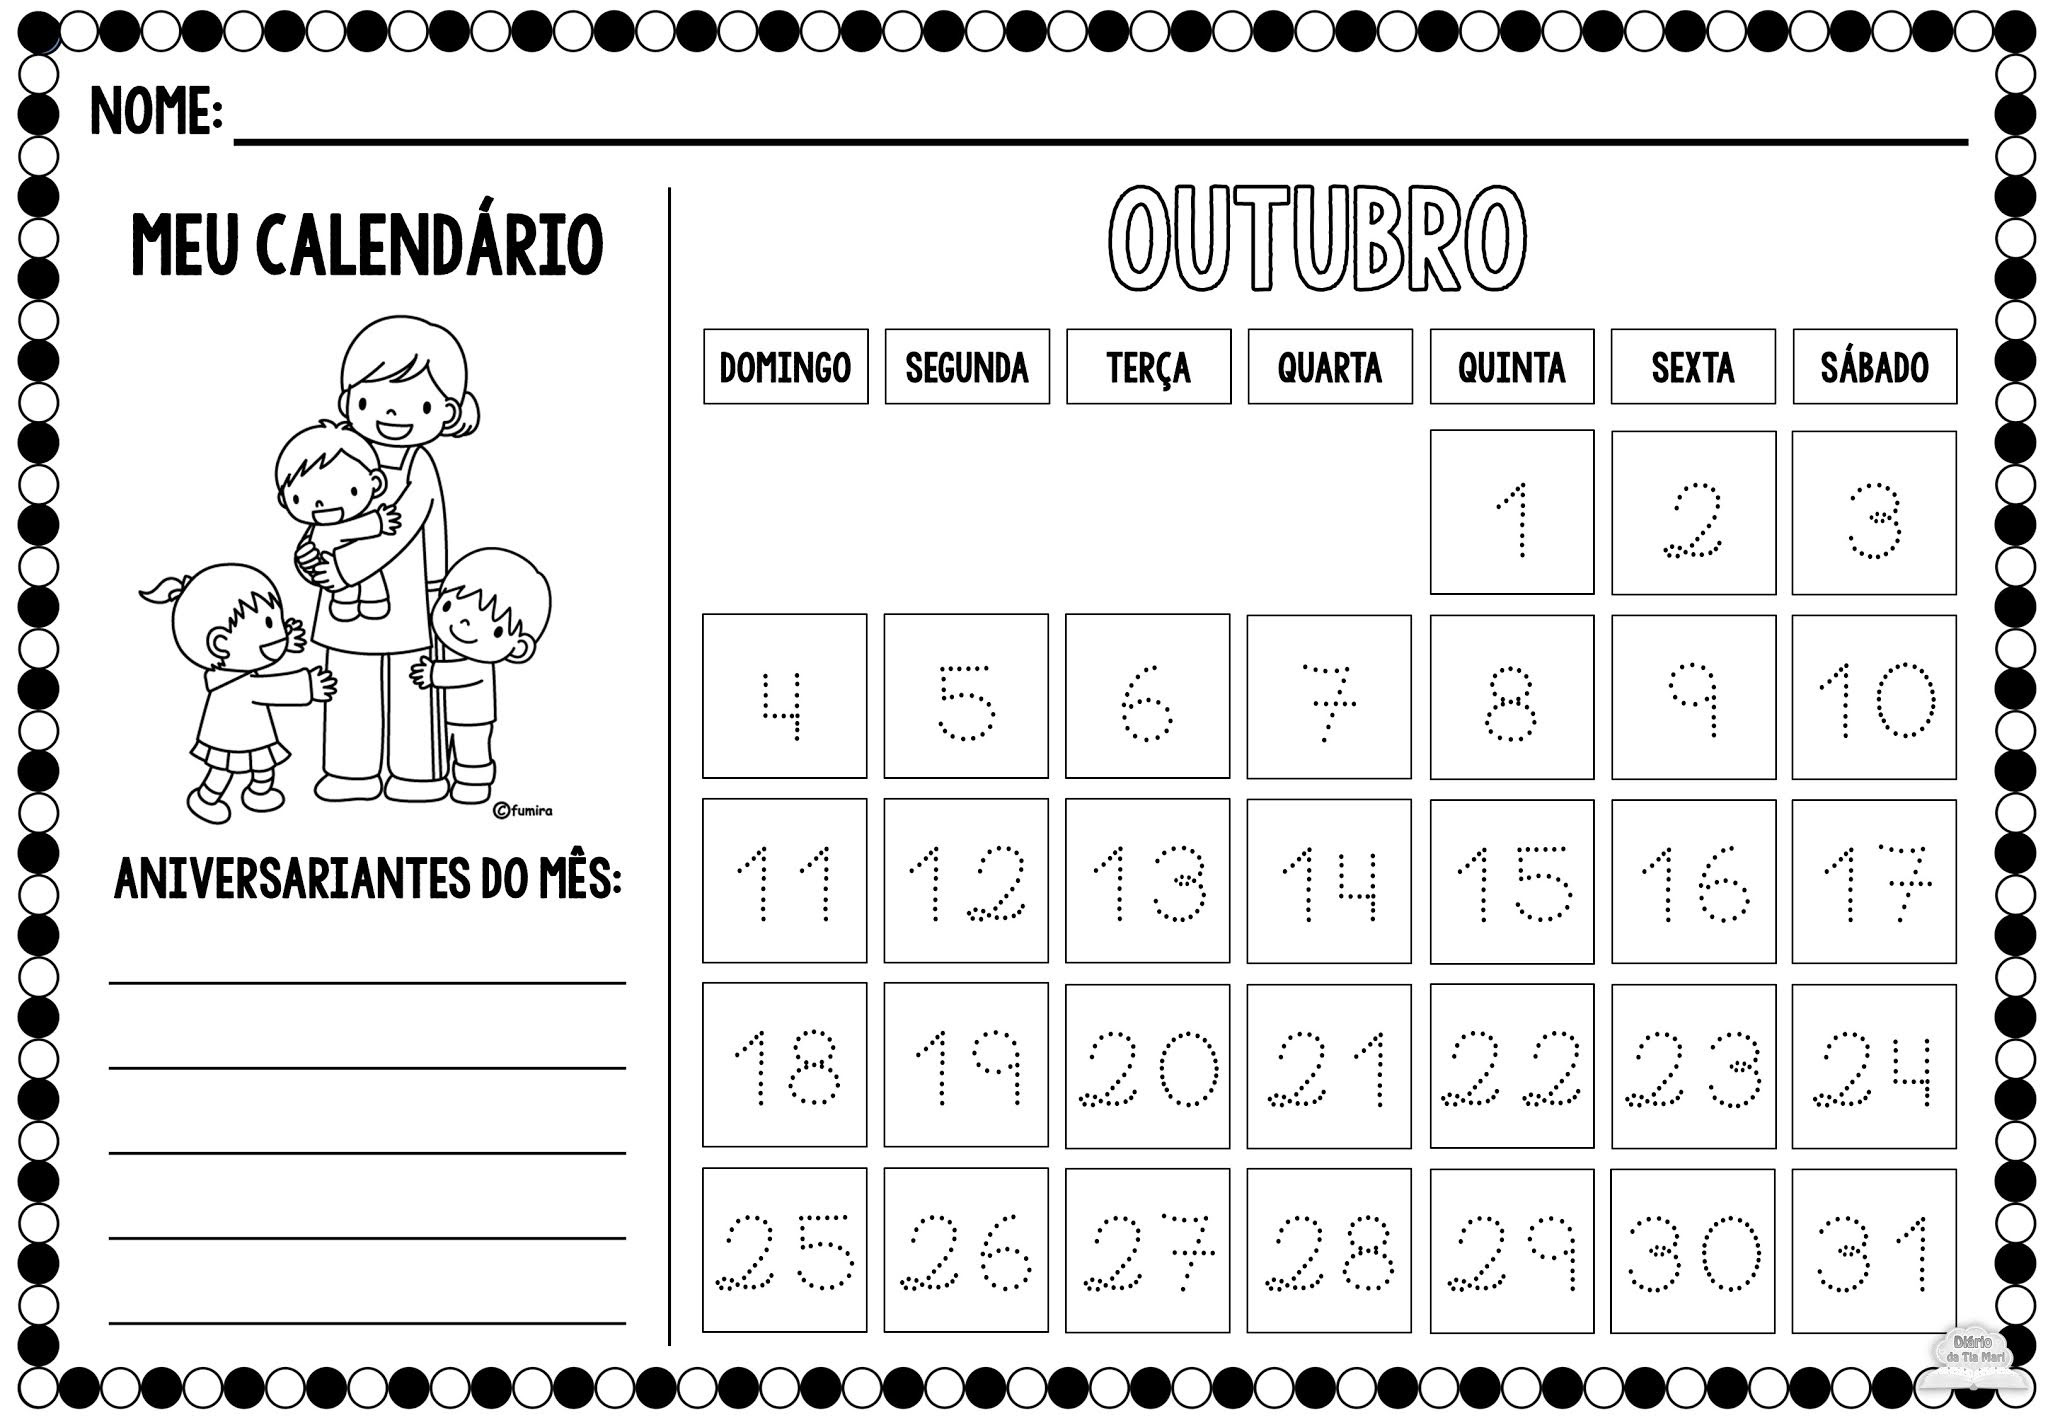 Calendário Da Turma - Outubro/2020 (Novo Modelo)  Calendario Meses Rancho Las Voces